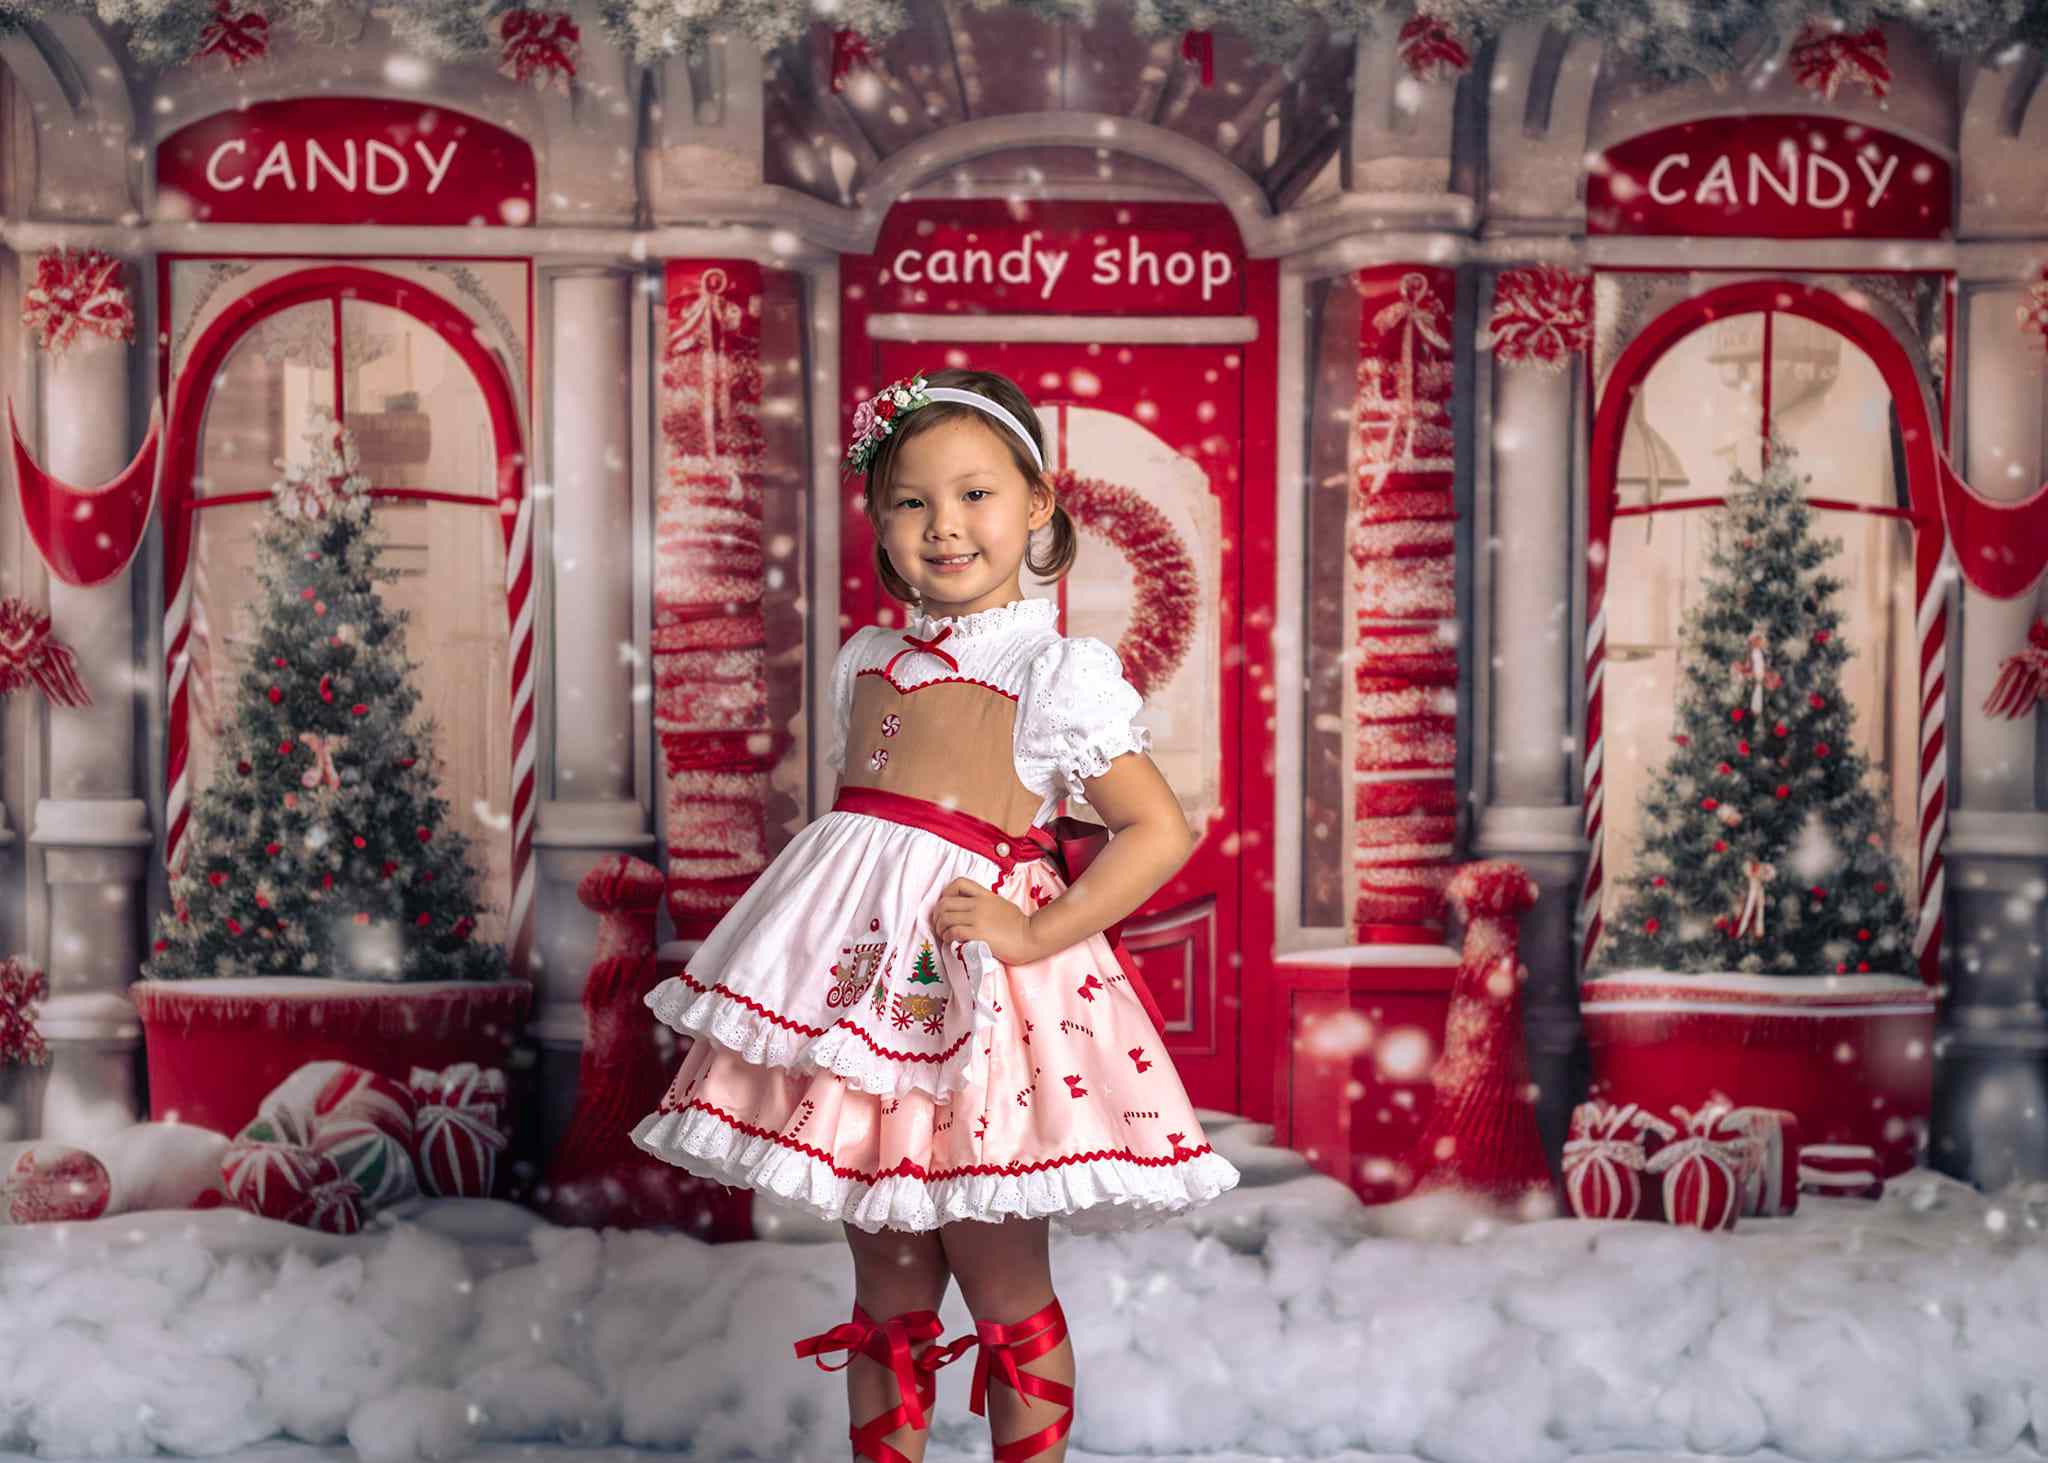 Kate Weihnachten Rot Süßigkeiten Shop Hintergrund von Chain Photography